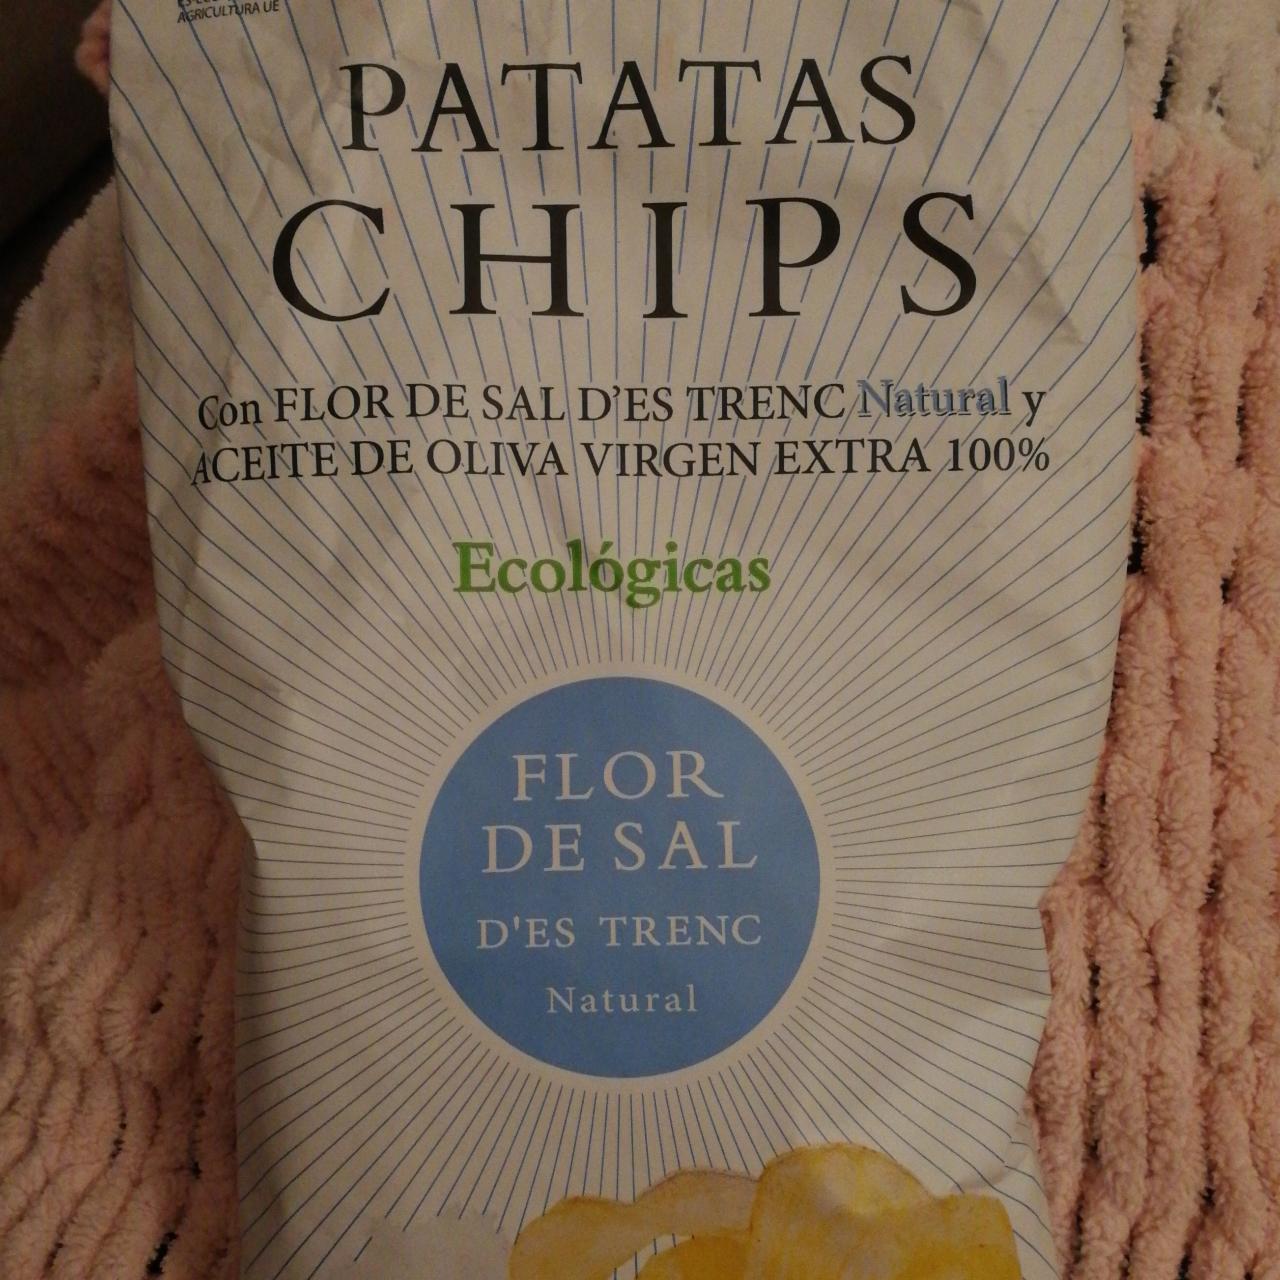 Fotografie - Patatas chips flor de sal d'es trenc natural ecológicas